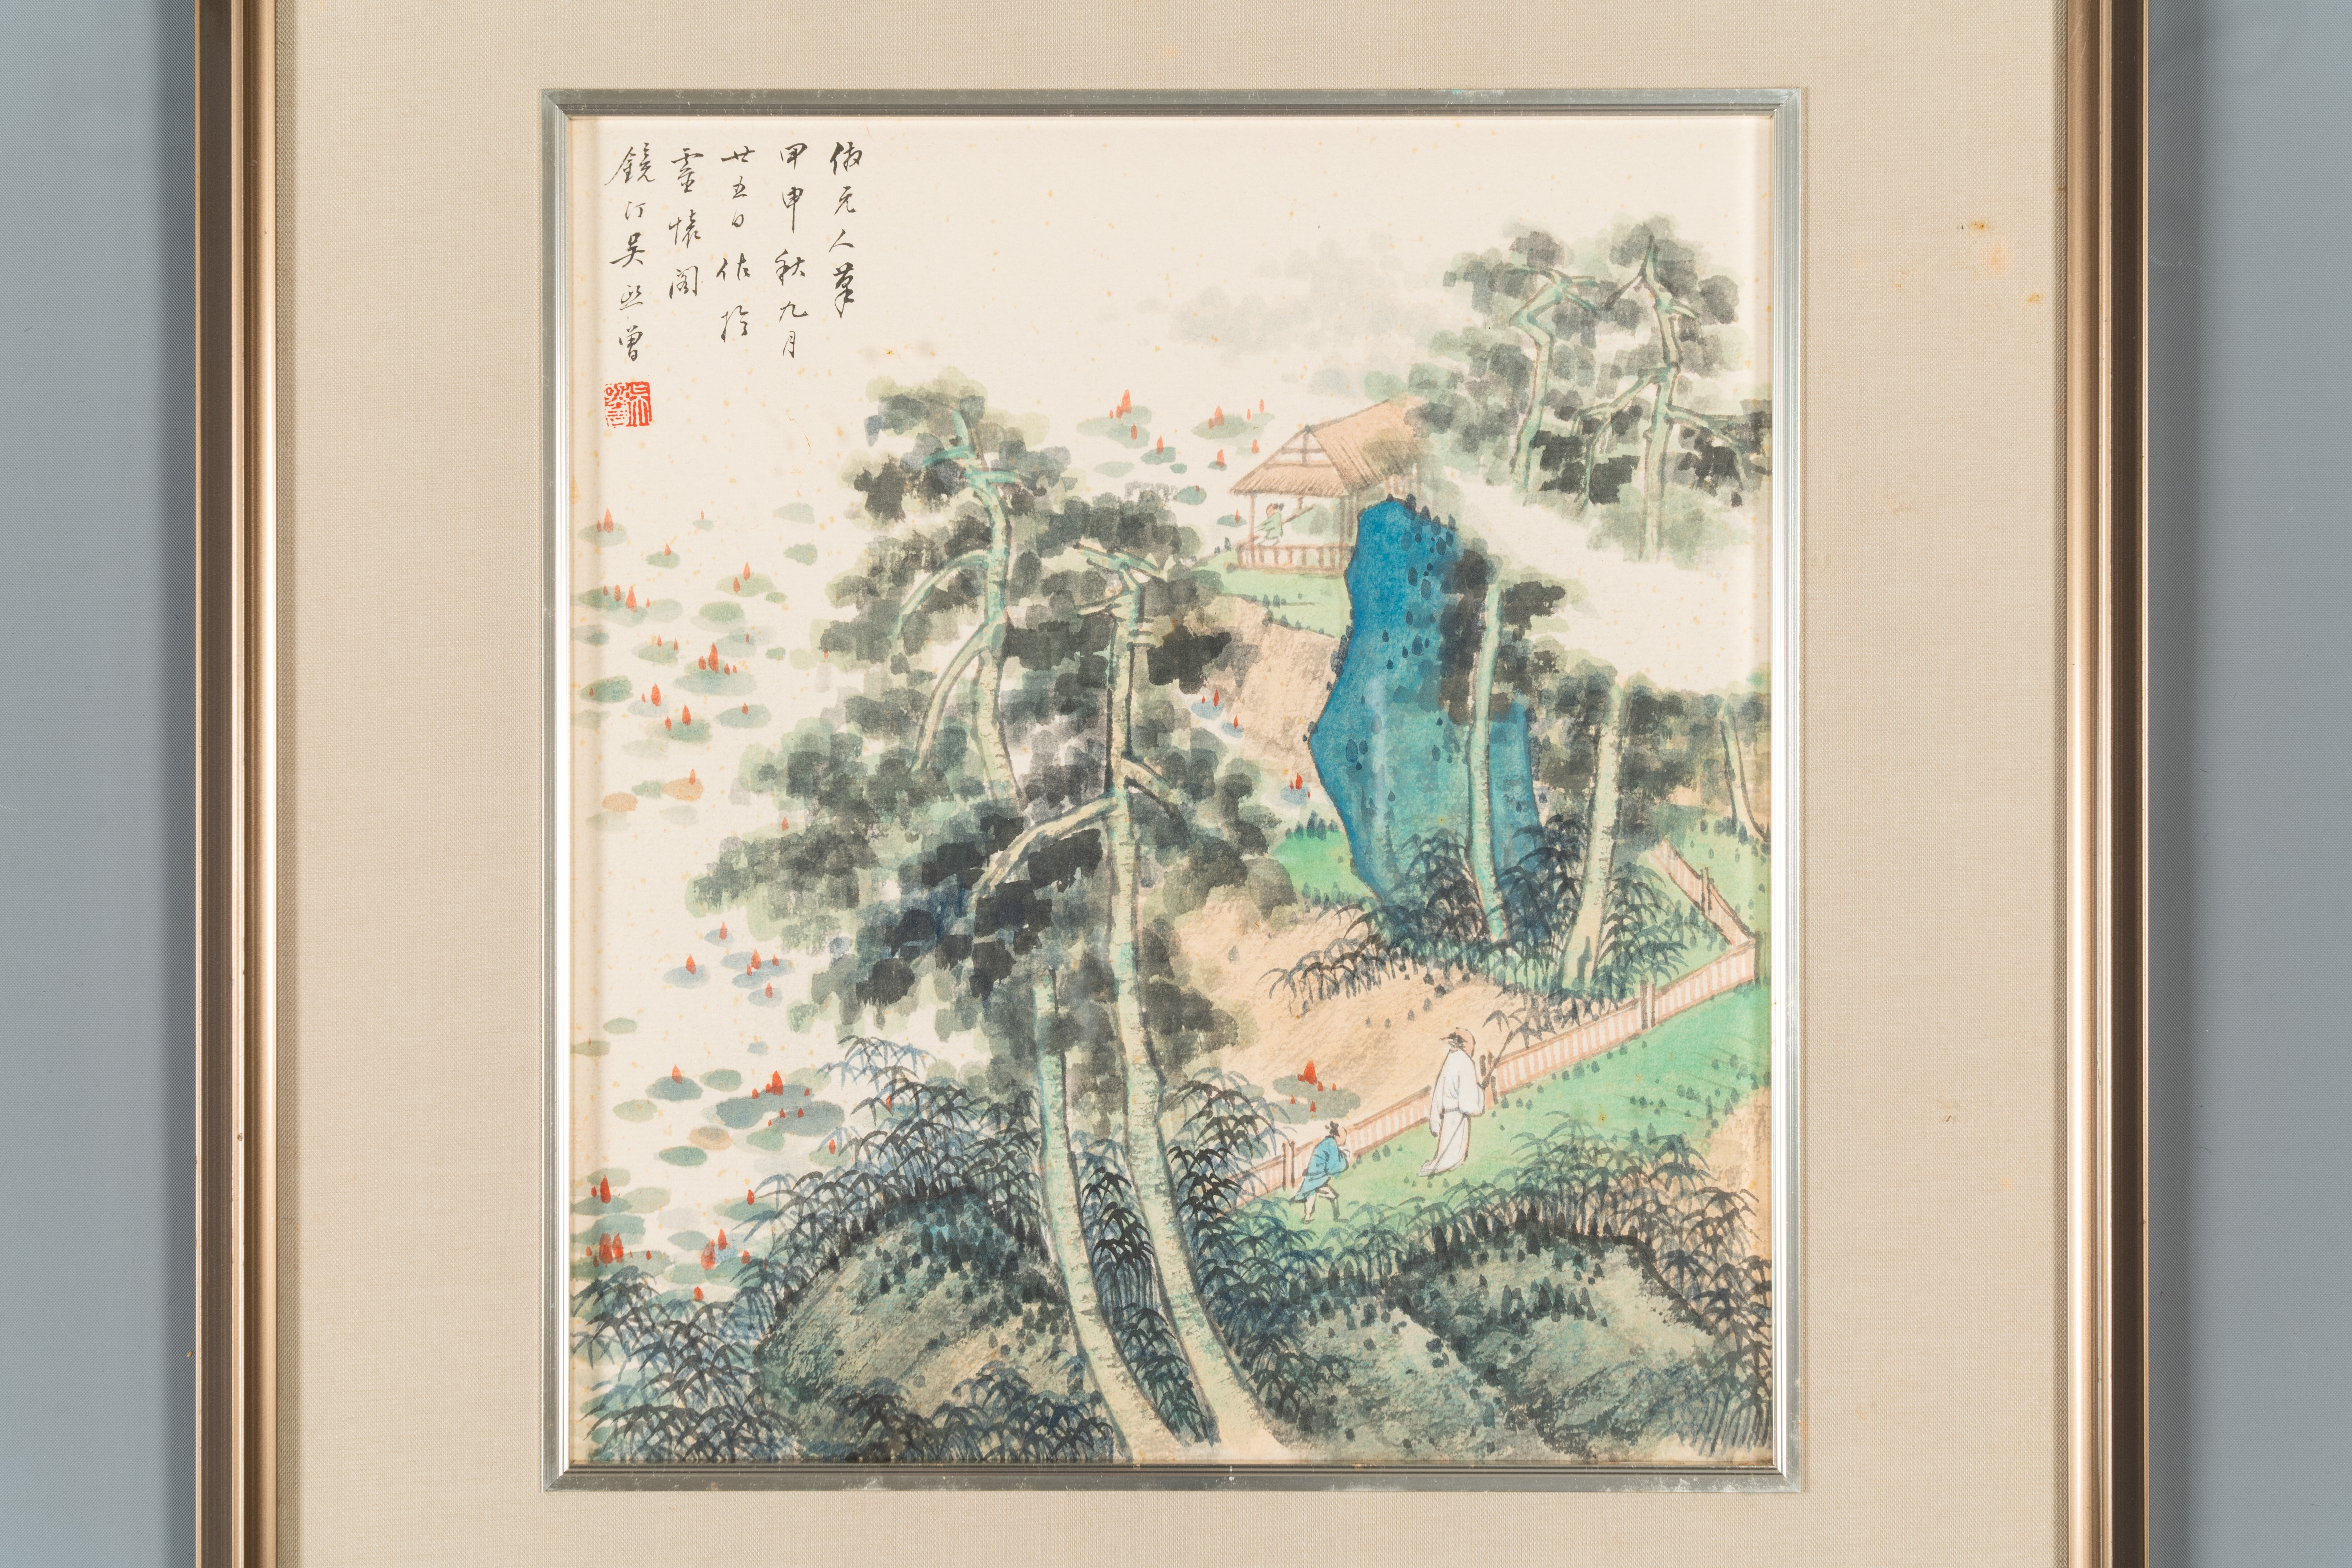 Pu Xinyu æº¥å¿ƒç•¬ (1896-1963): 'Cat and rabbit' and Wu Xizeng å³ç†™æ›¾ (1904-1972): 'Landscape', i - Image 2 of 4